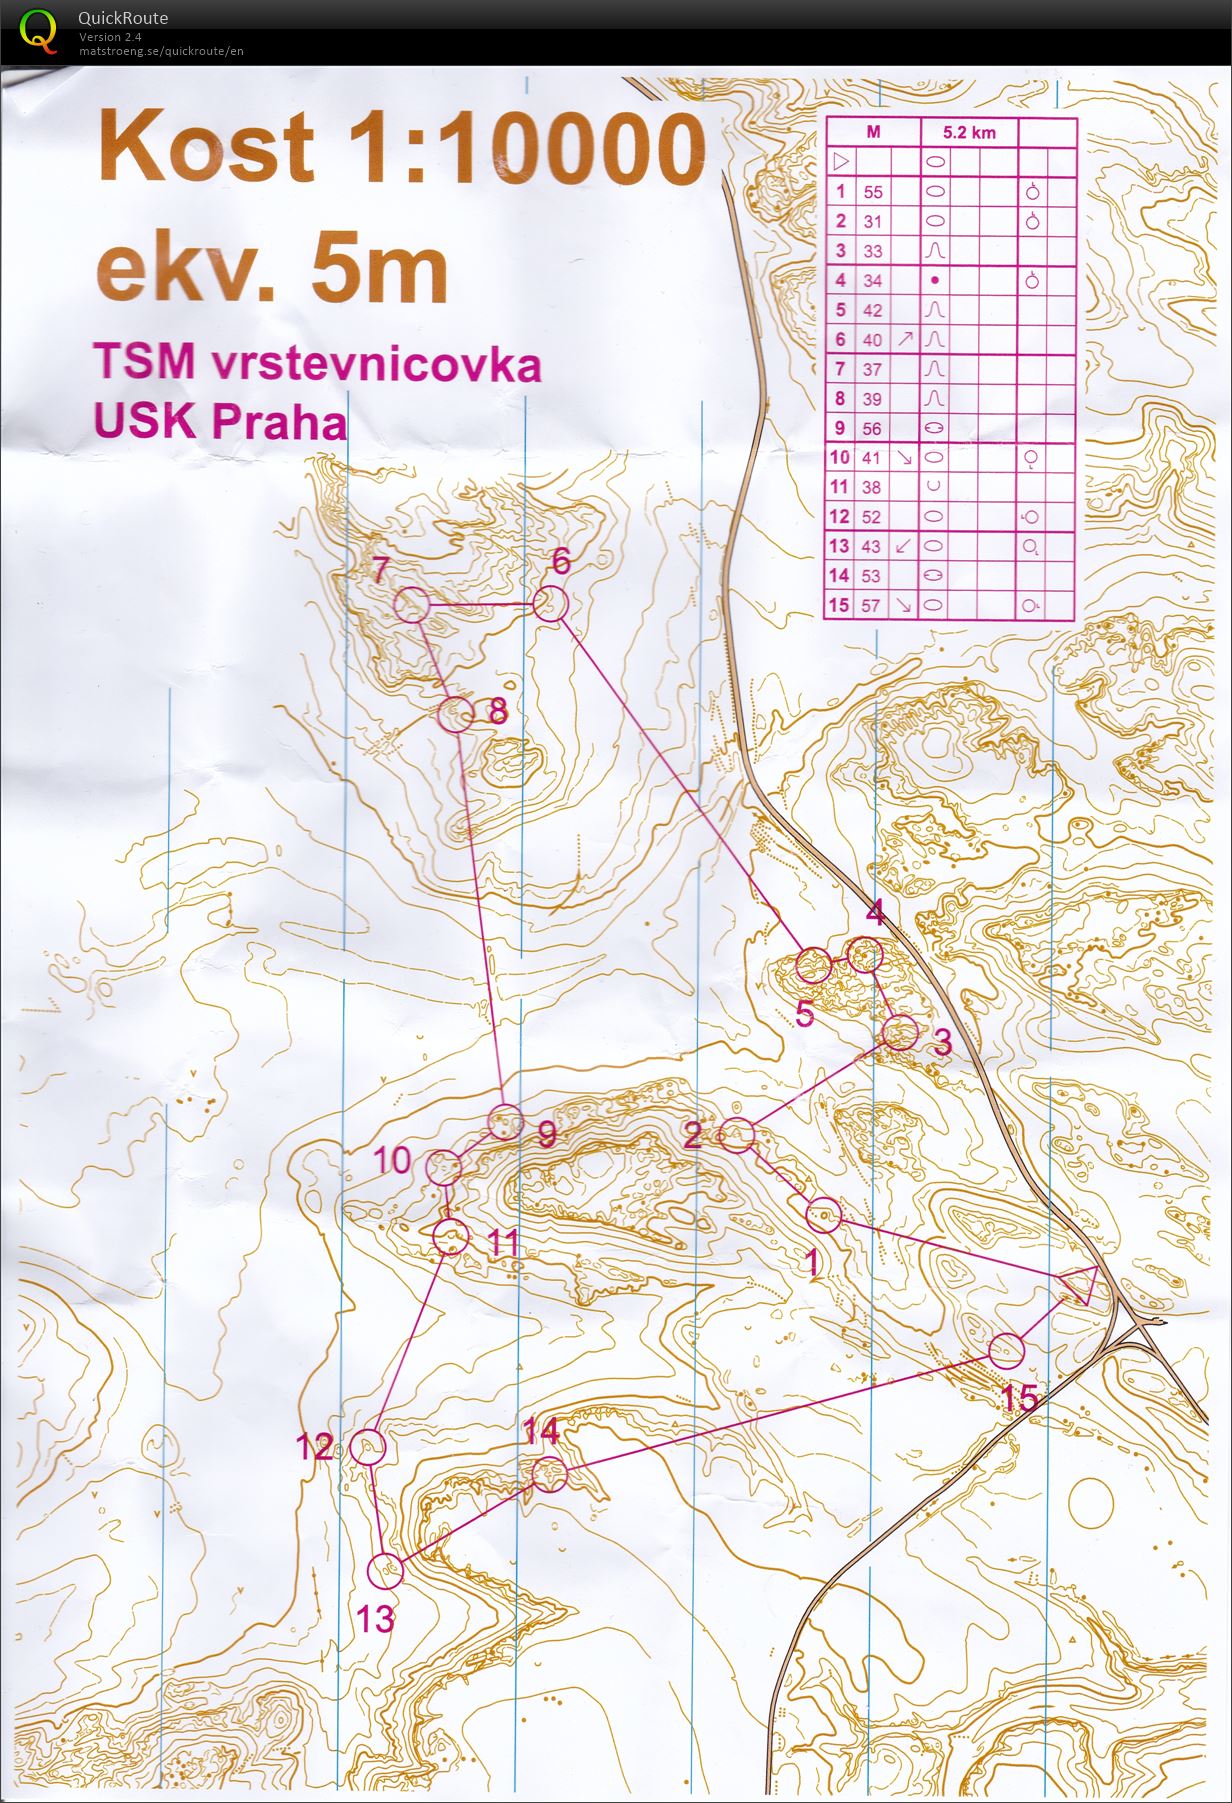 TSM Vrstevnicovka (02/05/2021)